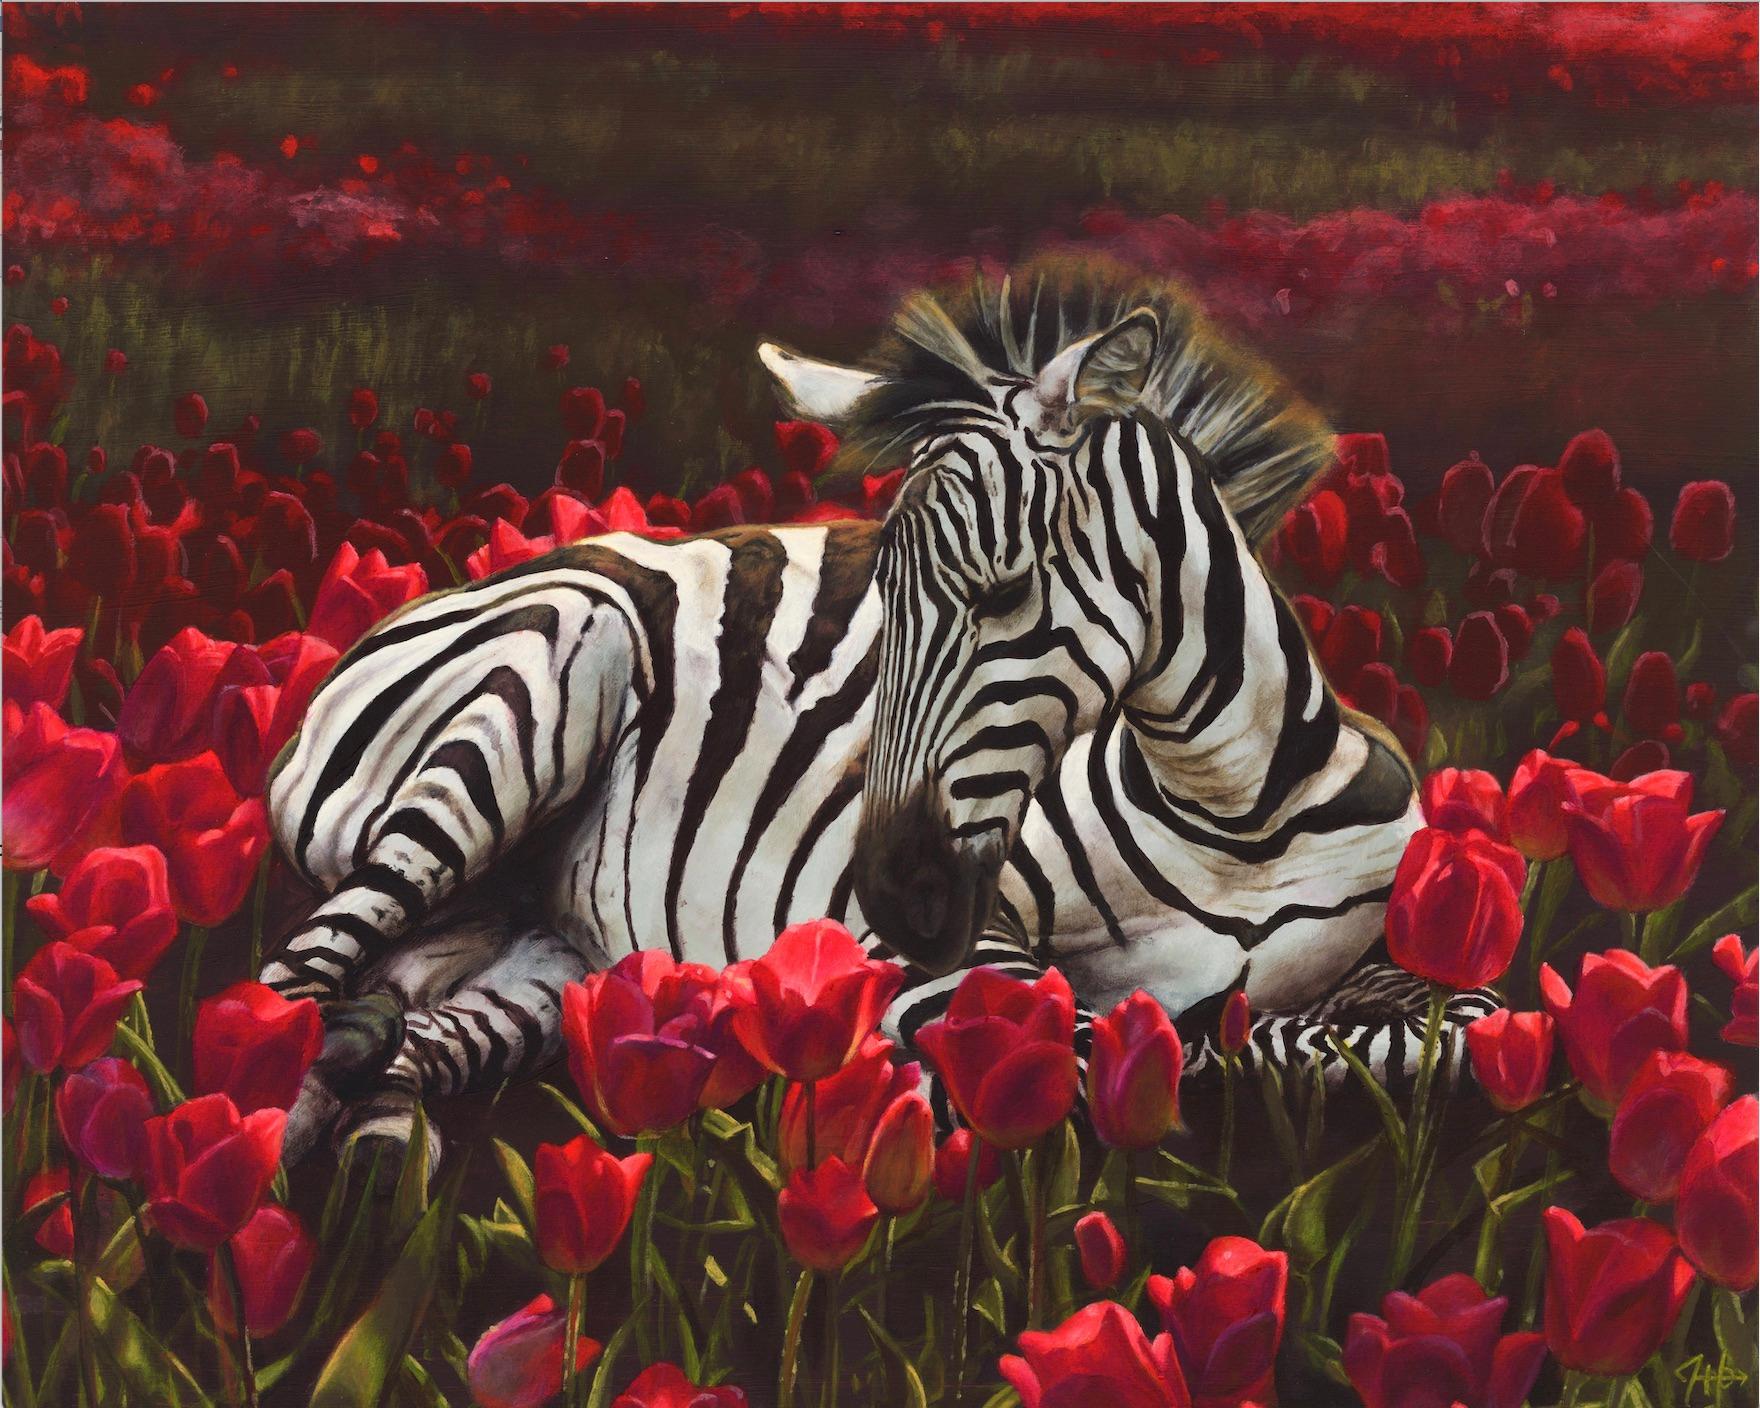  Zuflucht- Original surrealistische Blumenmalerei - Zeitgenössische Kunst